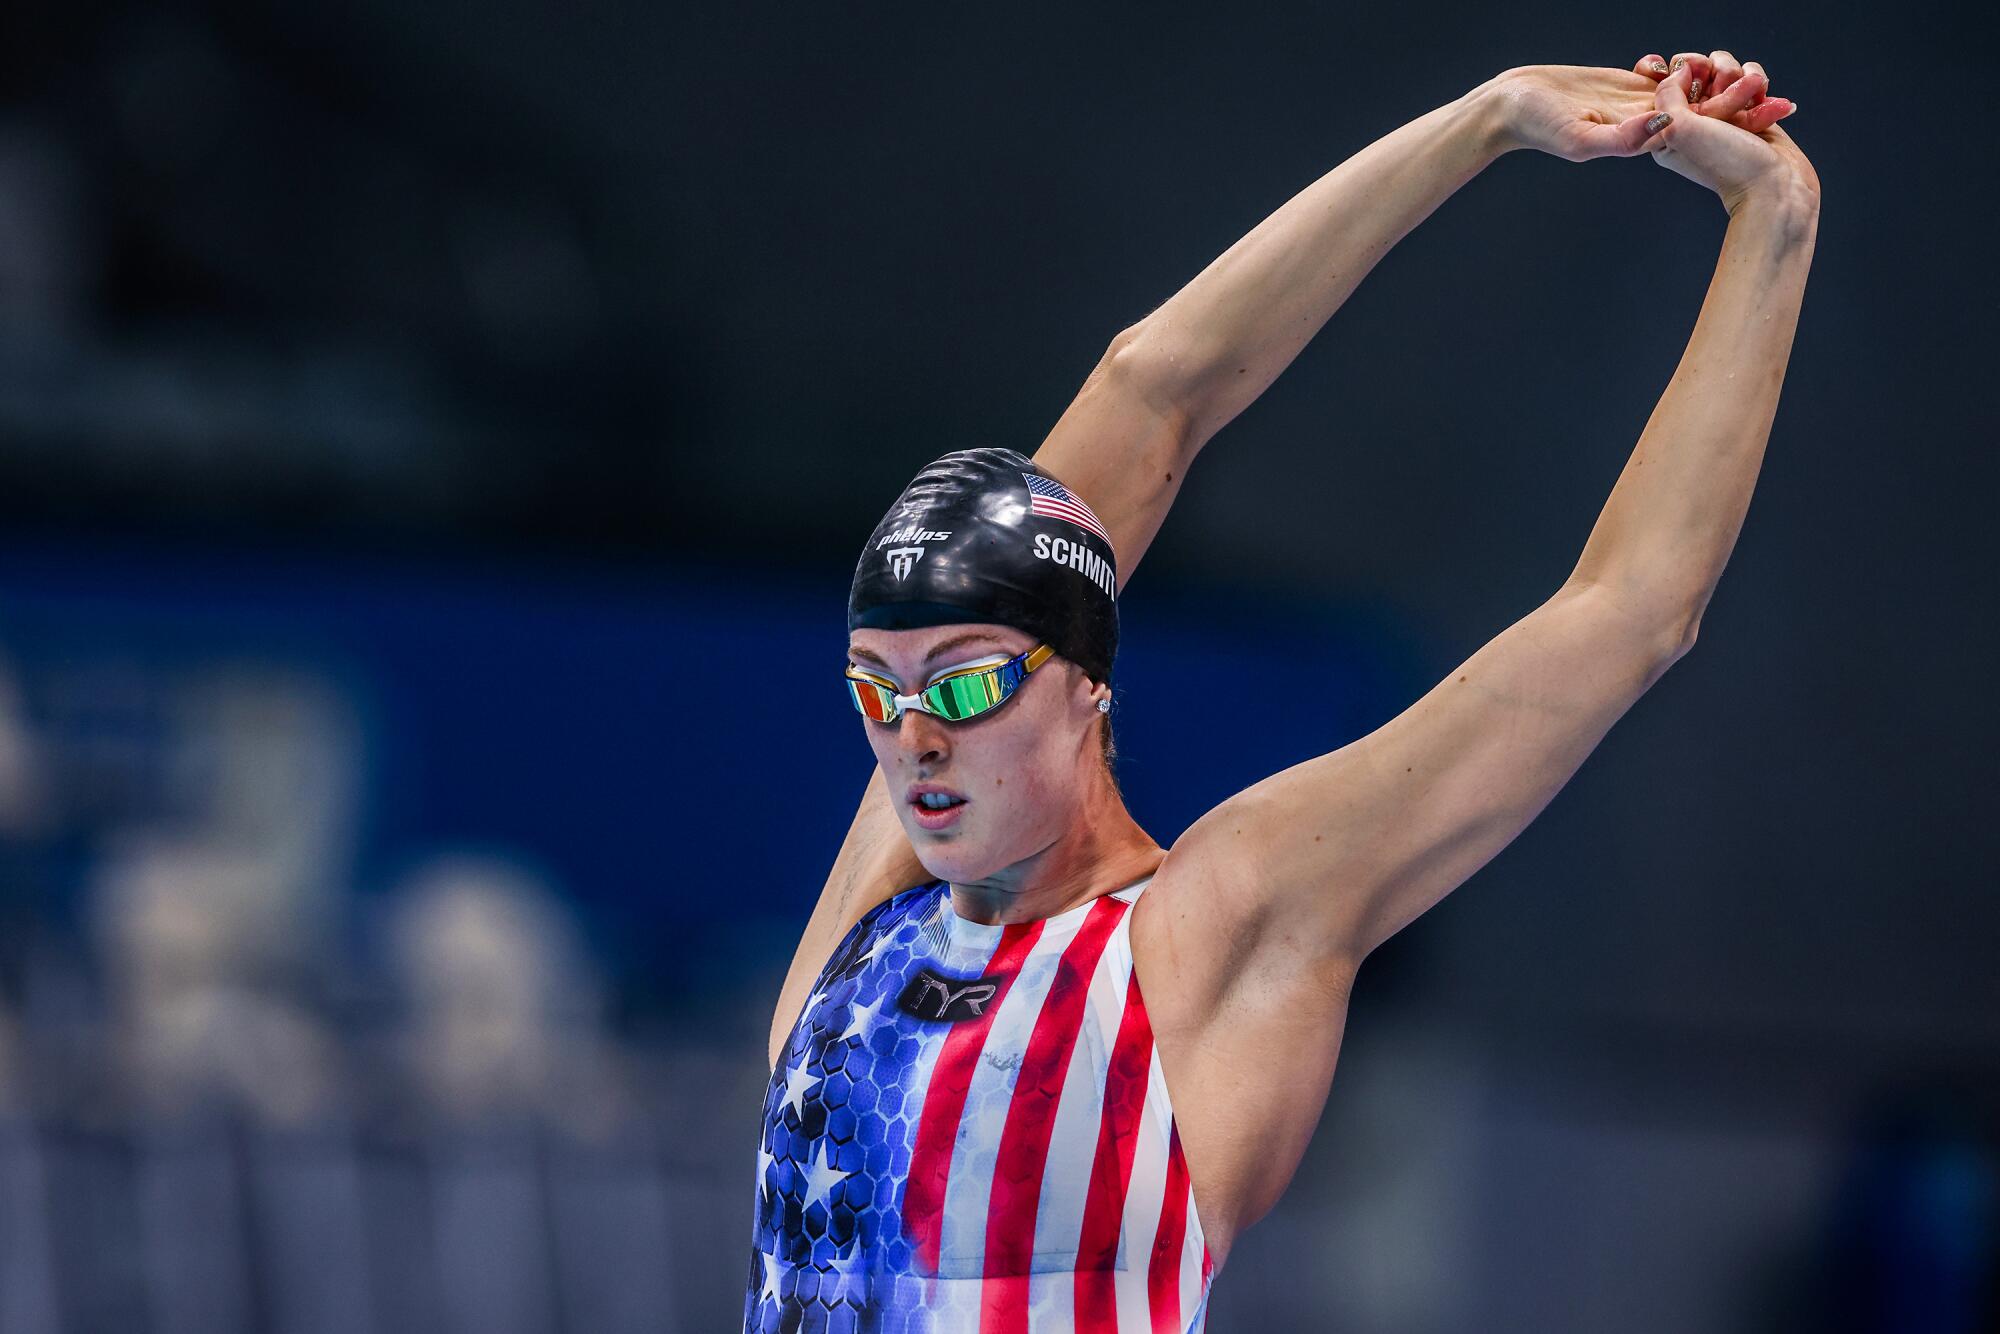 USA swimmer Allison Schmitt